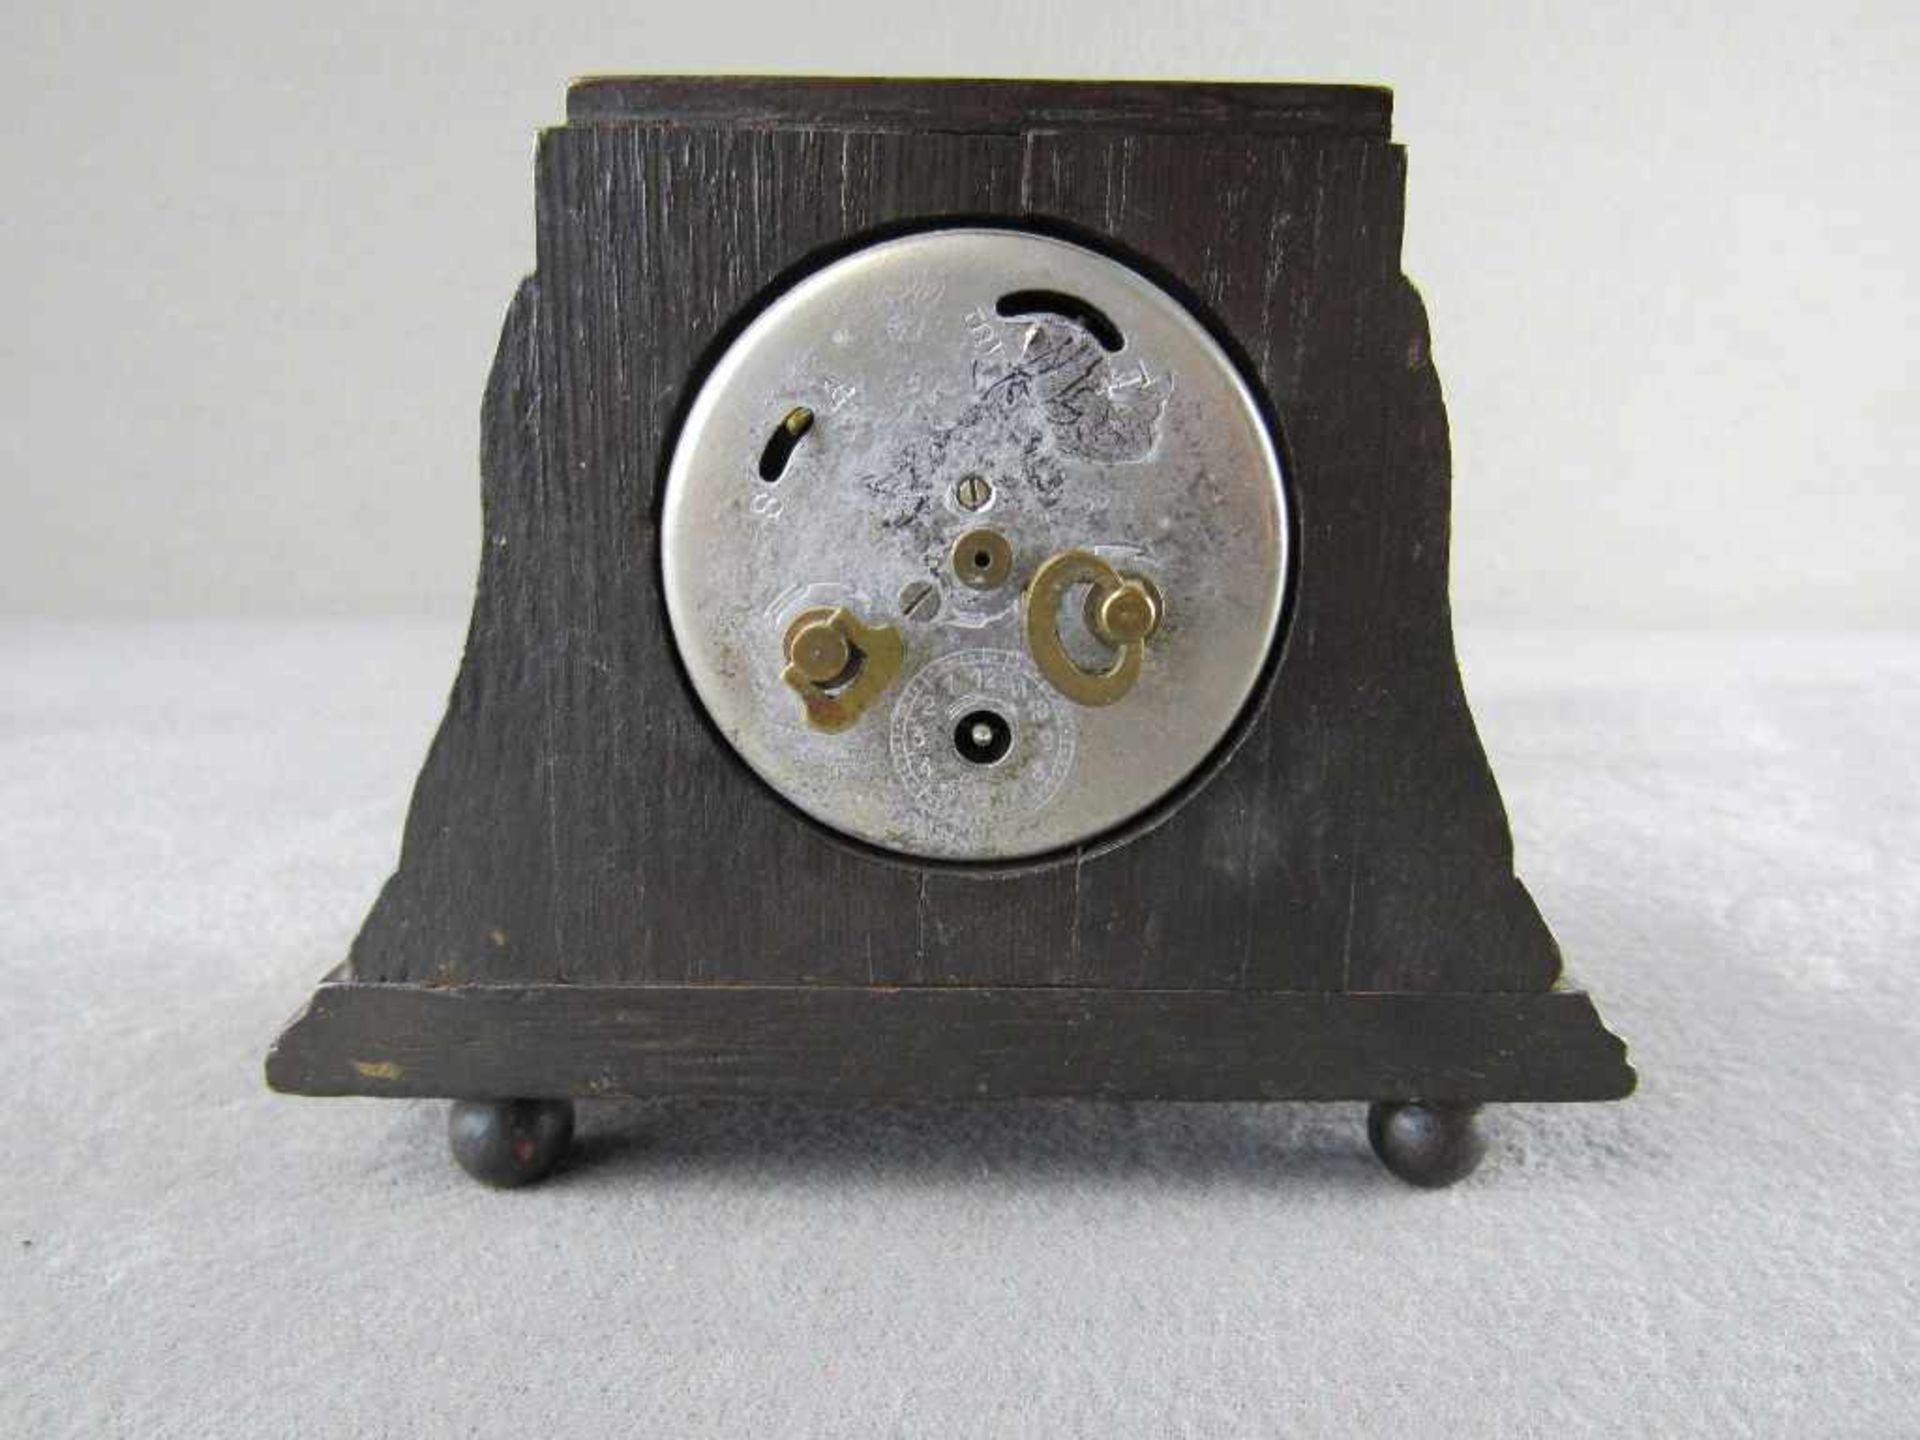 Kleine Tischuhr Junghans um 1920 11,5cm hoch läuft an< - Image 3 of 3